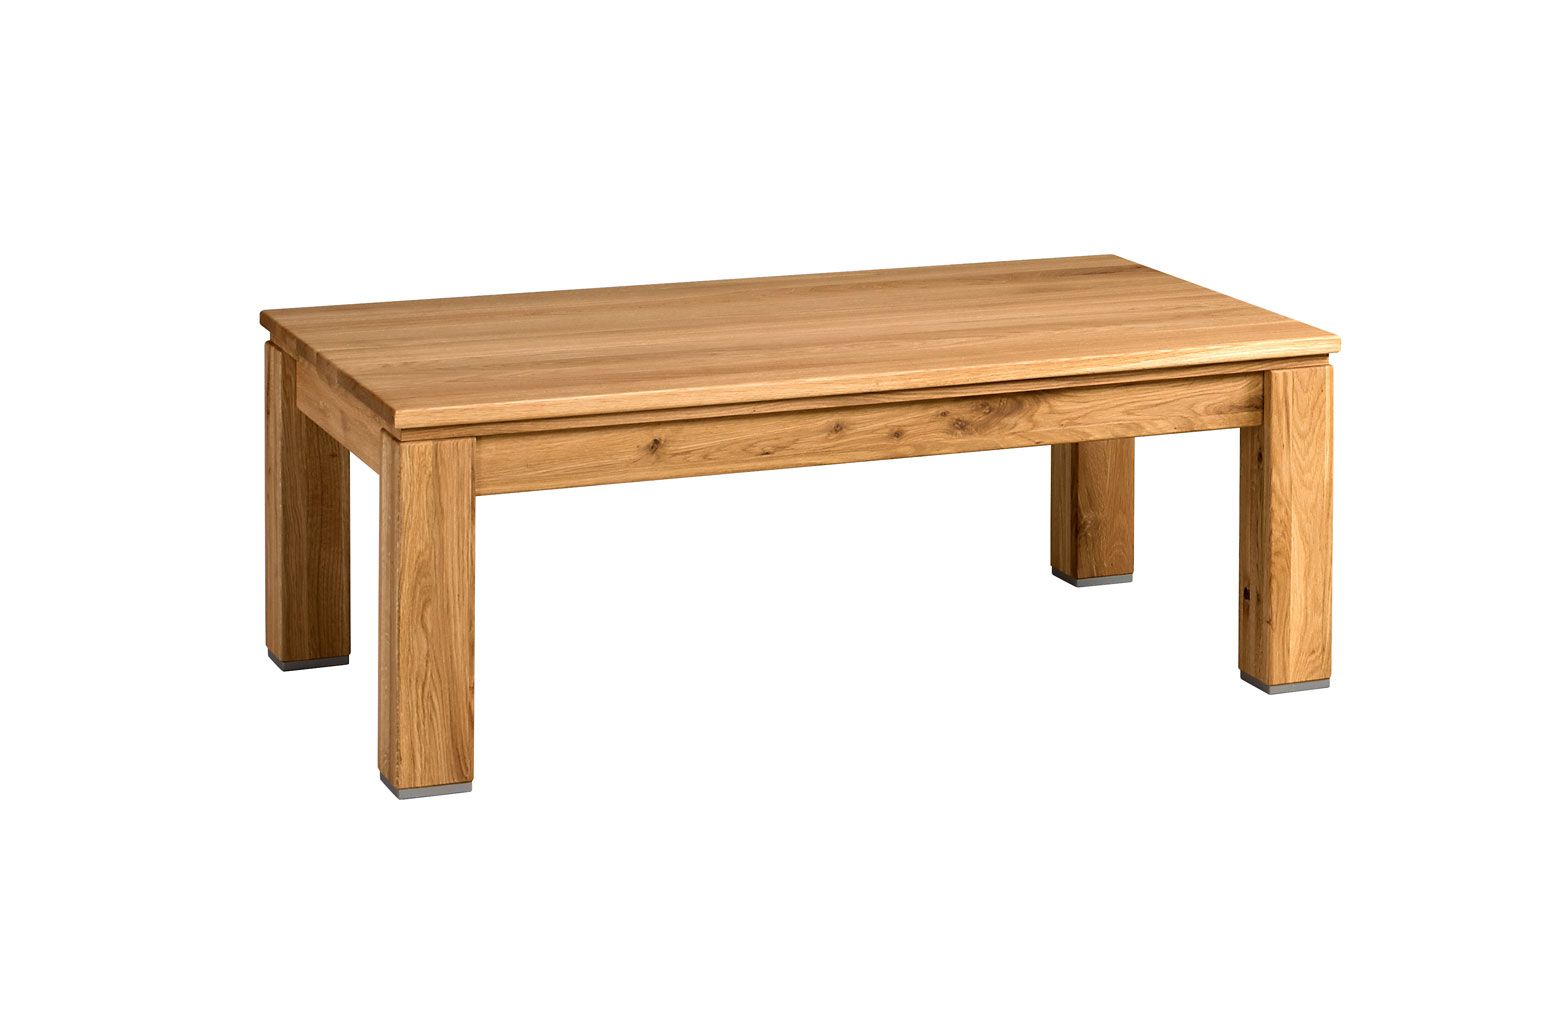 Table d'appoint stable Balsa 09, nature, style moderne, finition de qualité, chêne massif partiel, huilé / ciré, 120 x 70 x 45 cm, style contemporain